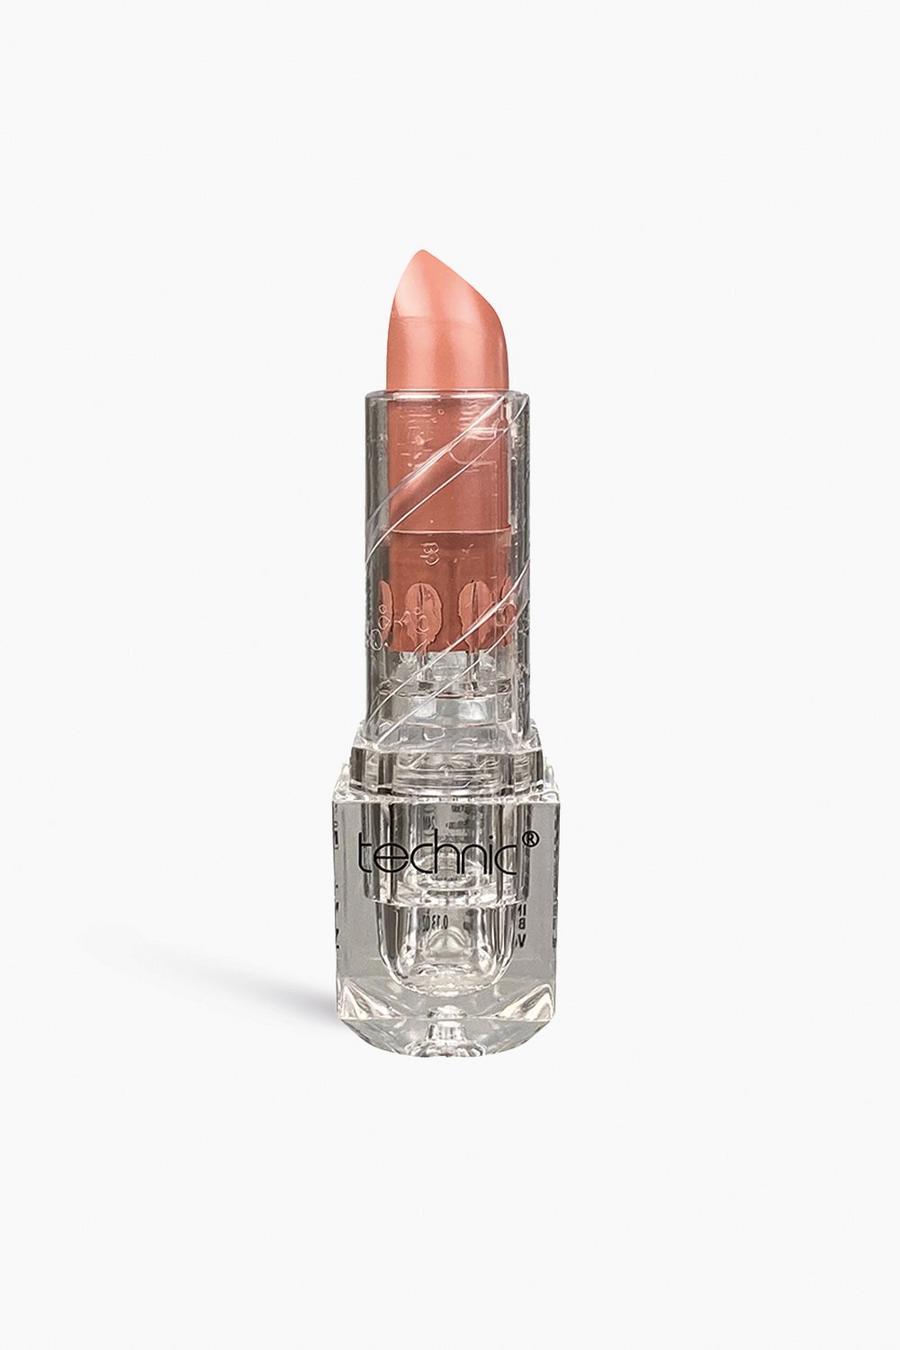 Technic Nude Edition Matte Lipstick - Bare